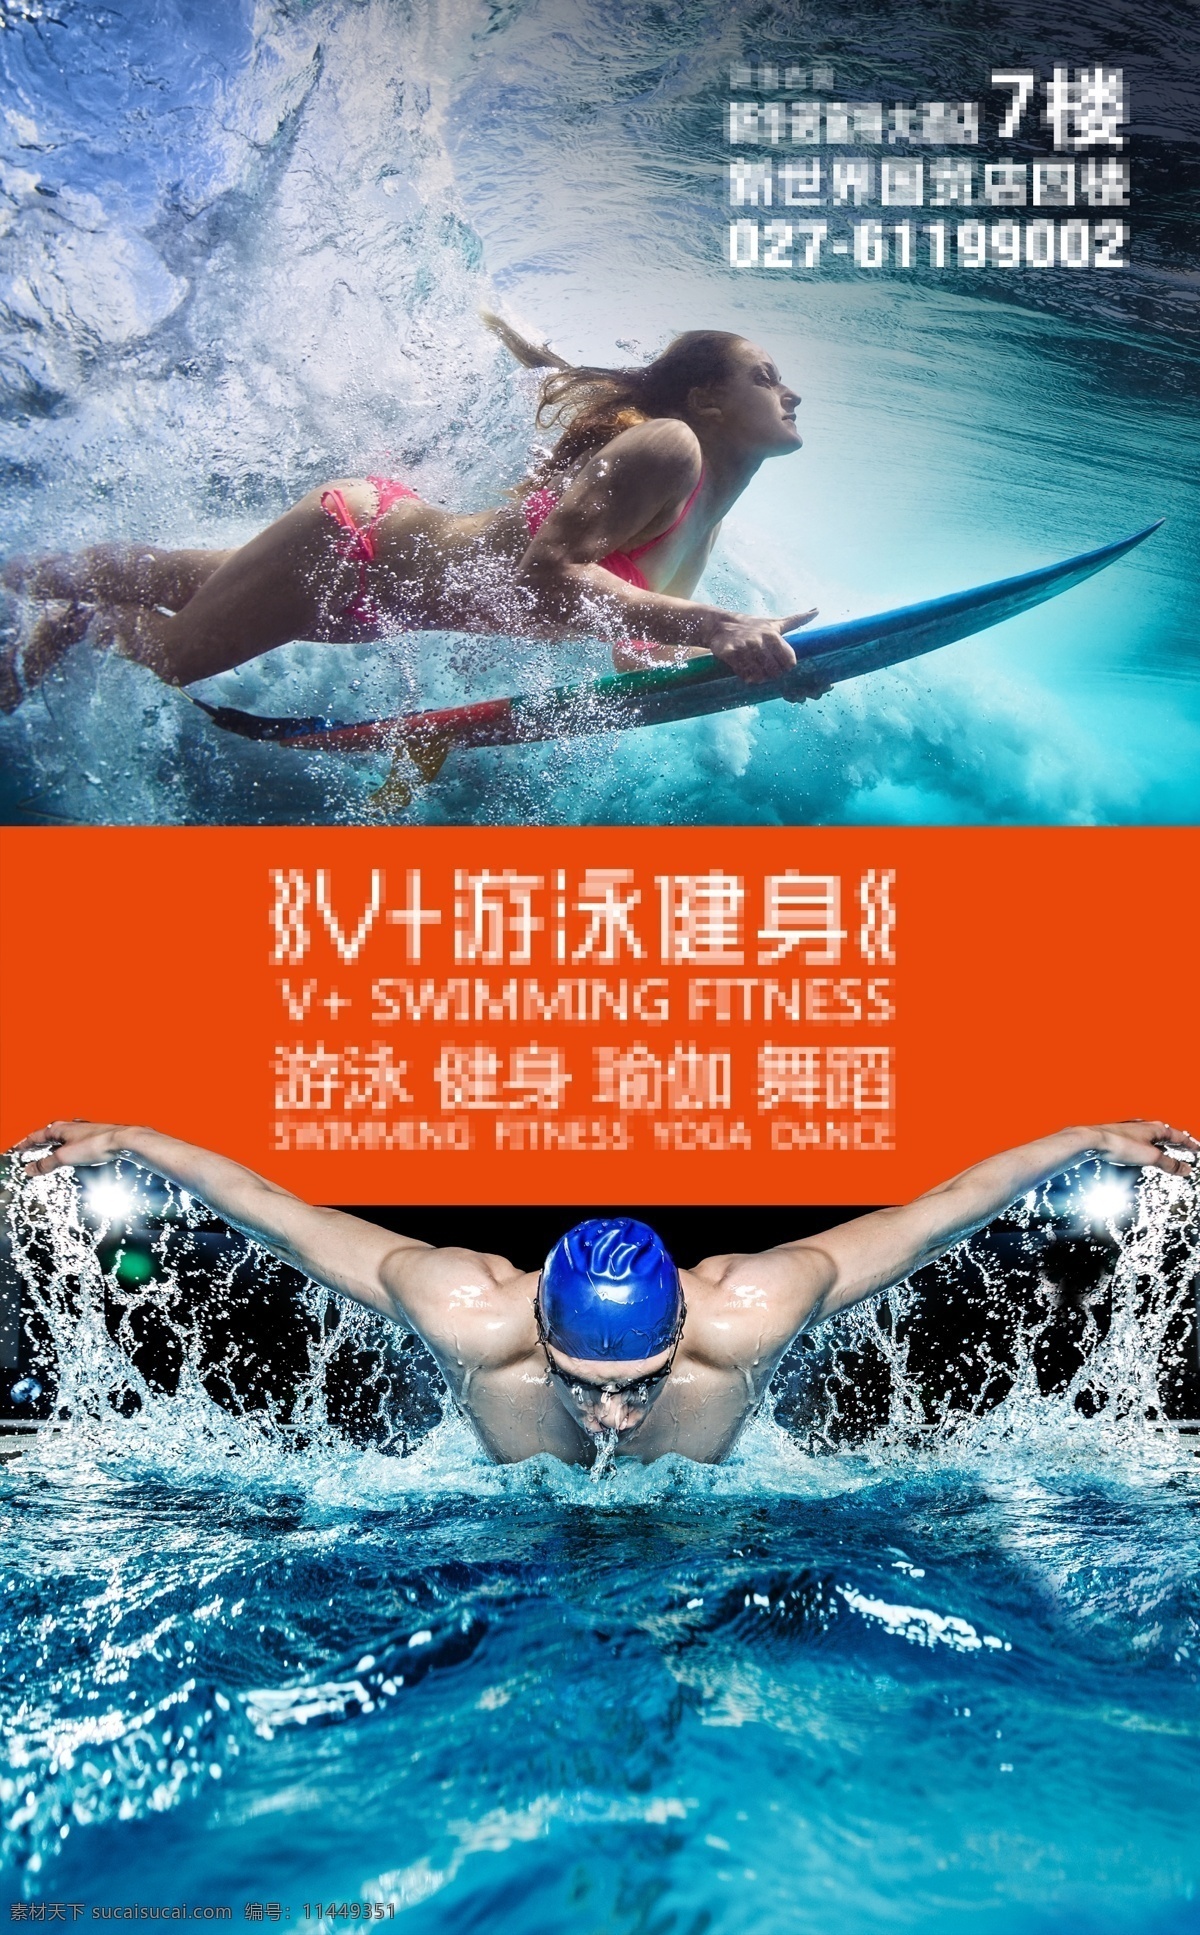 游泳 健身 户外广告 游泳健身 海底 大鹏展翅 游泳海报